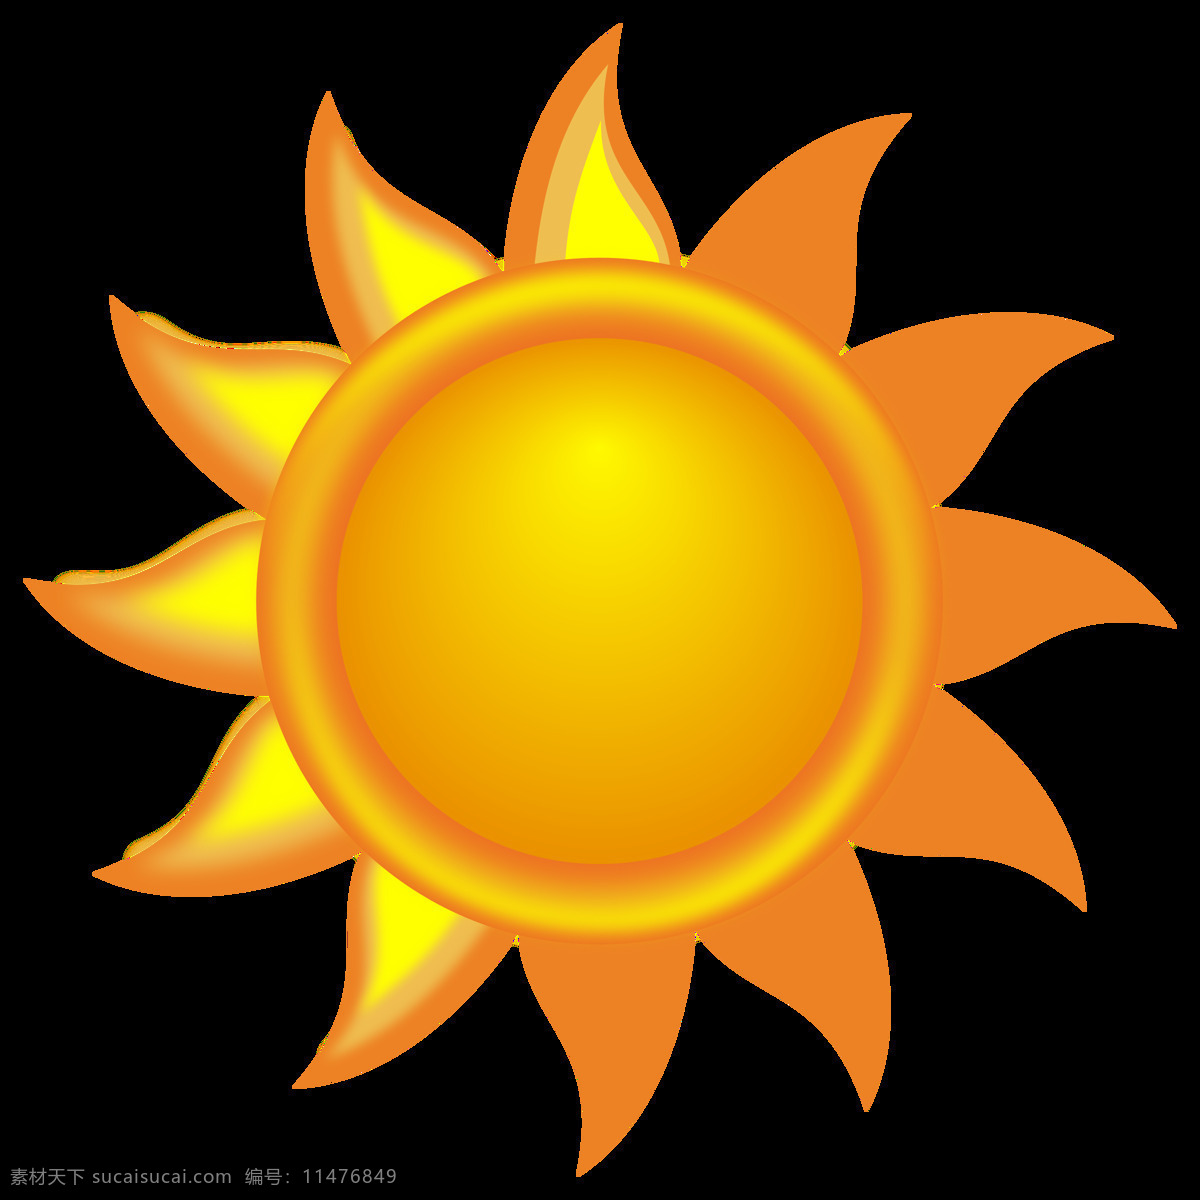 手绘 黄色 太阳 免 抠 透明 手绘黄色太阳 太阳真实图片 太阳表情包 太阳升起图片 太阳图片素材 太阳公公图片 卡通阳光图片 黄色太阳 日头 日光图片 手绘太阳